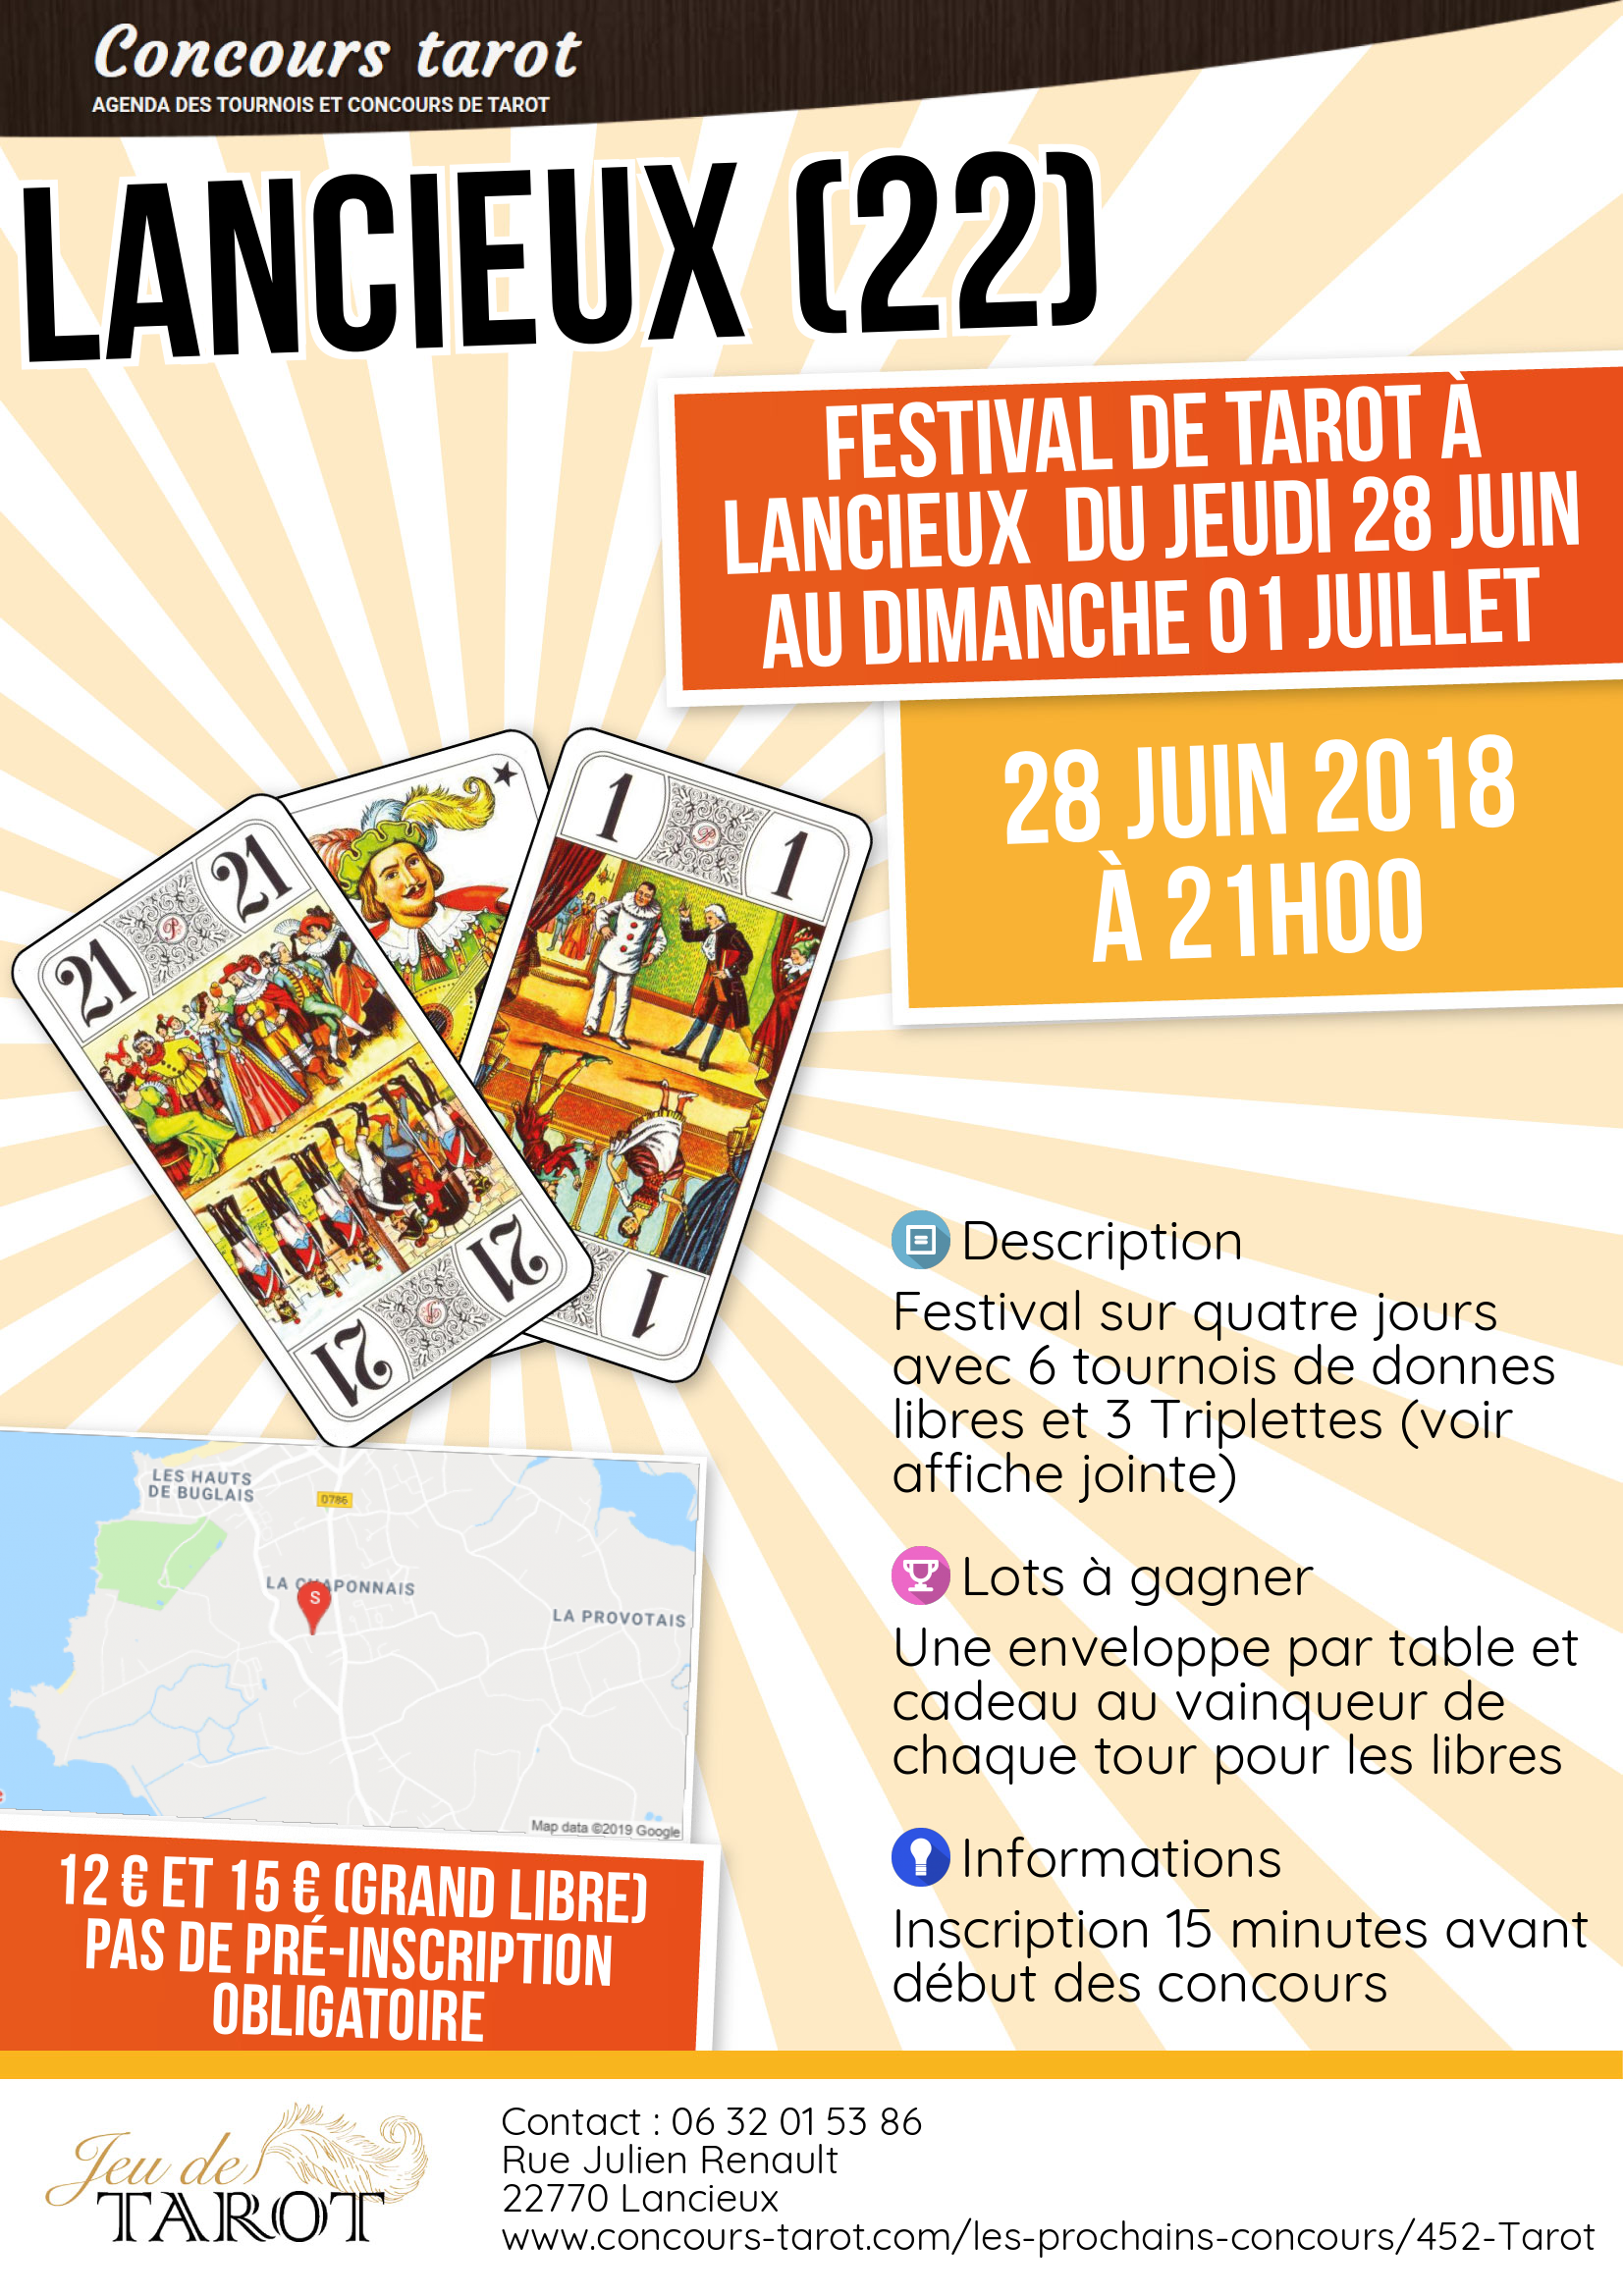 Festival de tarot a Lancieux  du Jeudi 28 juin au Dimanche 01 Juillet